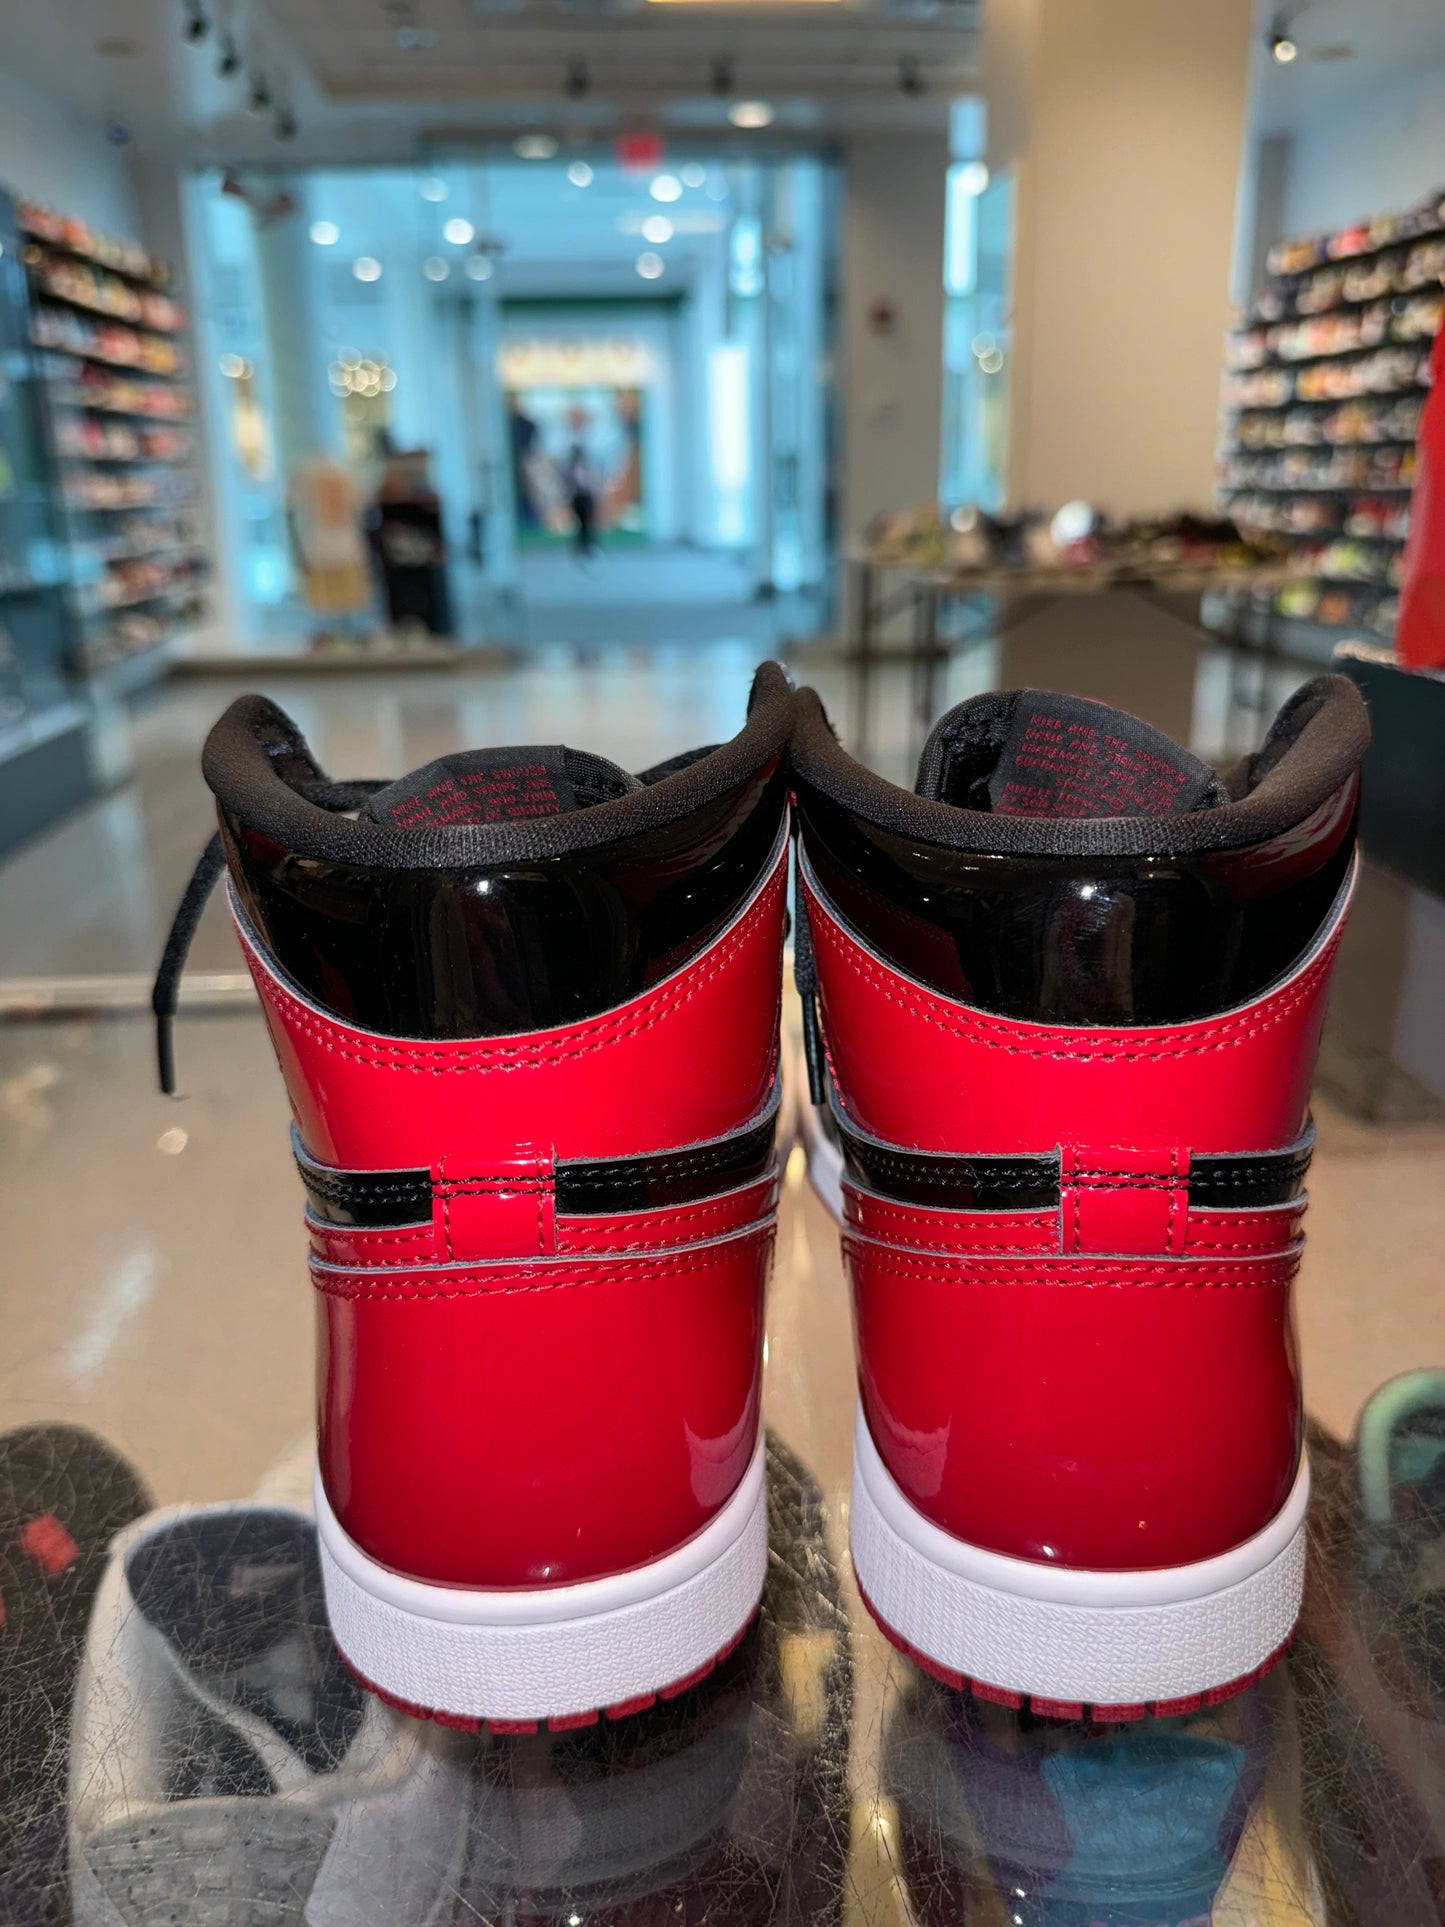 Size 8 Air Jordan 1 “Patent Bred” Worn 1x (Mall)